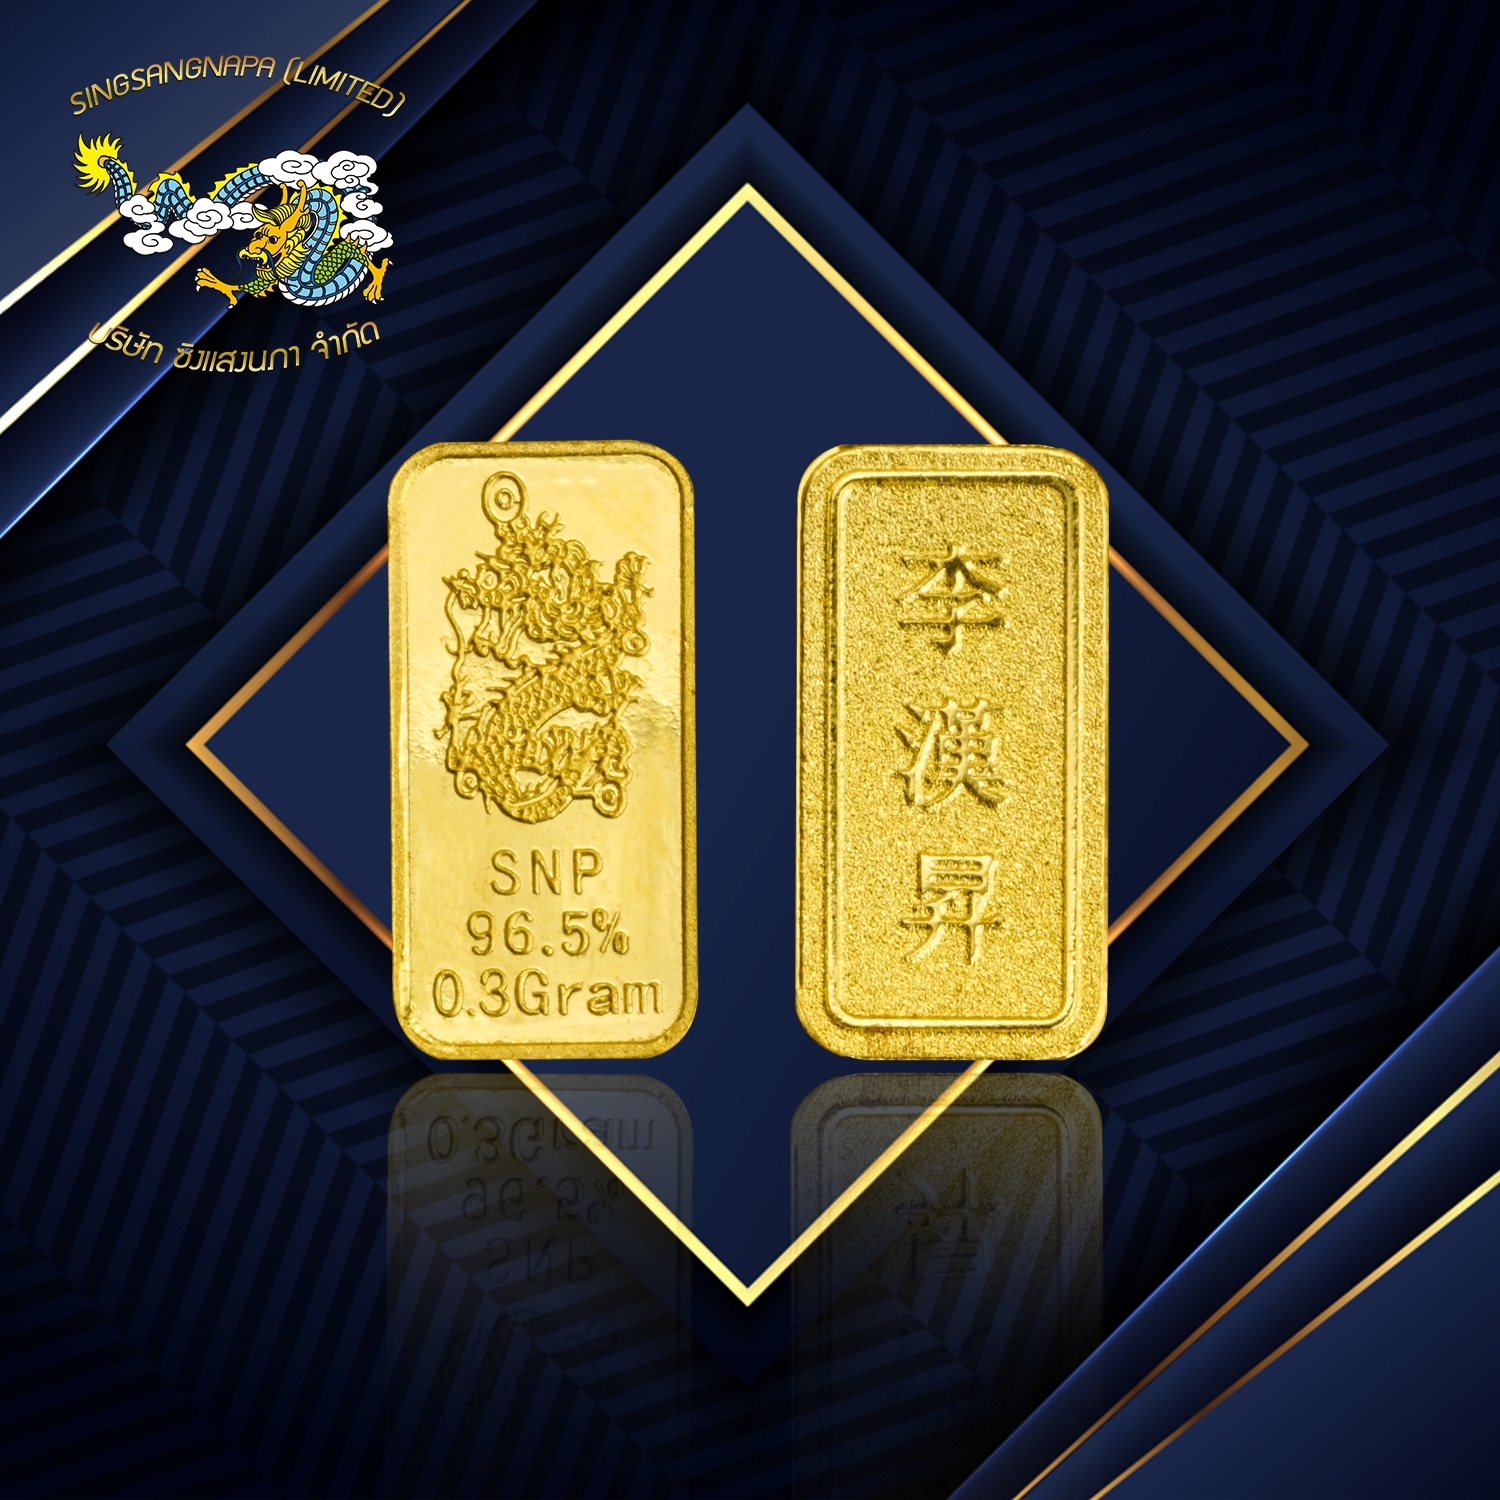 SSNP GOLD 4 ทองแท้ 96.5 % น้ำหนัก 0.3 กรัม พร้อมใบรับประกัน